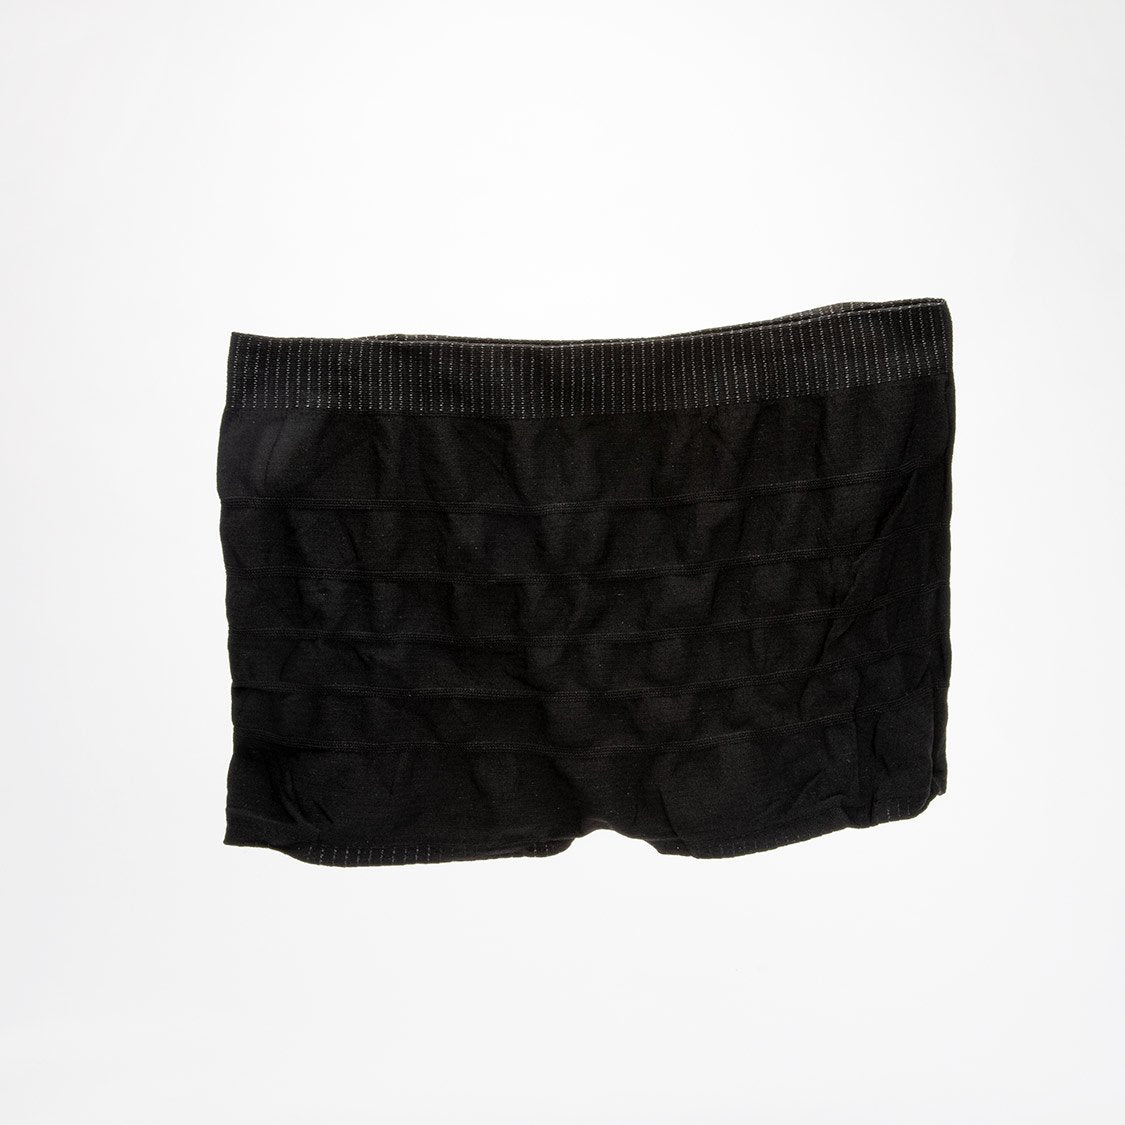 A pair of postpartum underwear in black. 